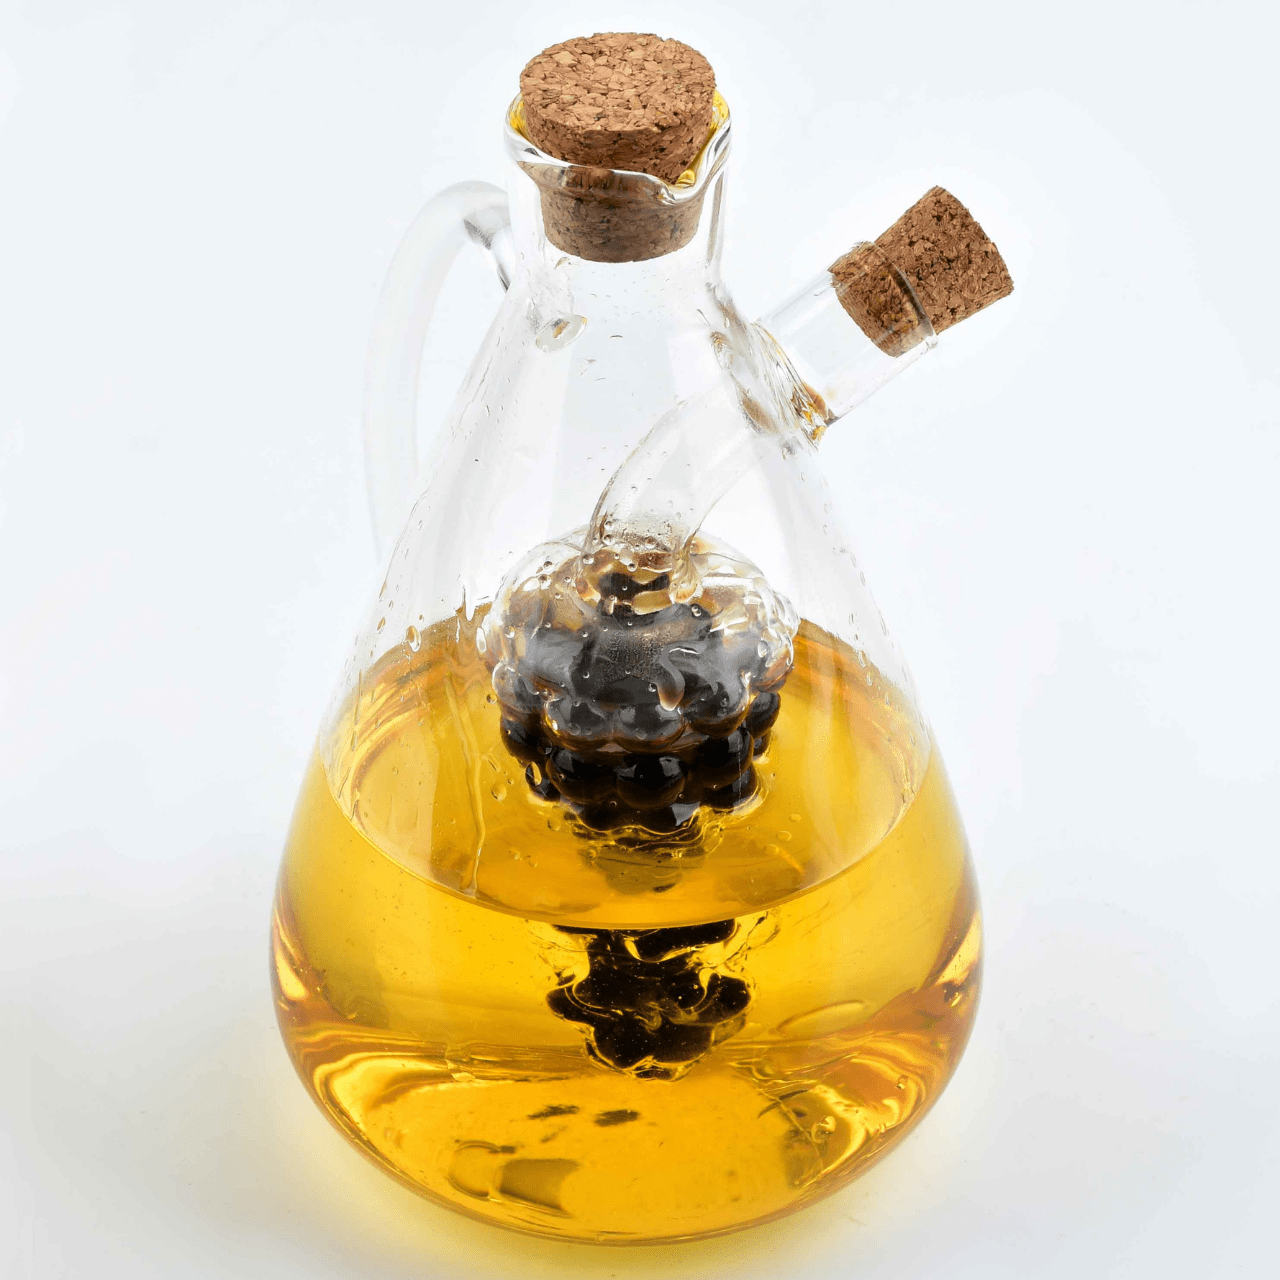 Cookini olie- & azijnfles Olie- & Azijnkaraf | Home